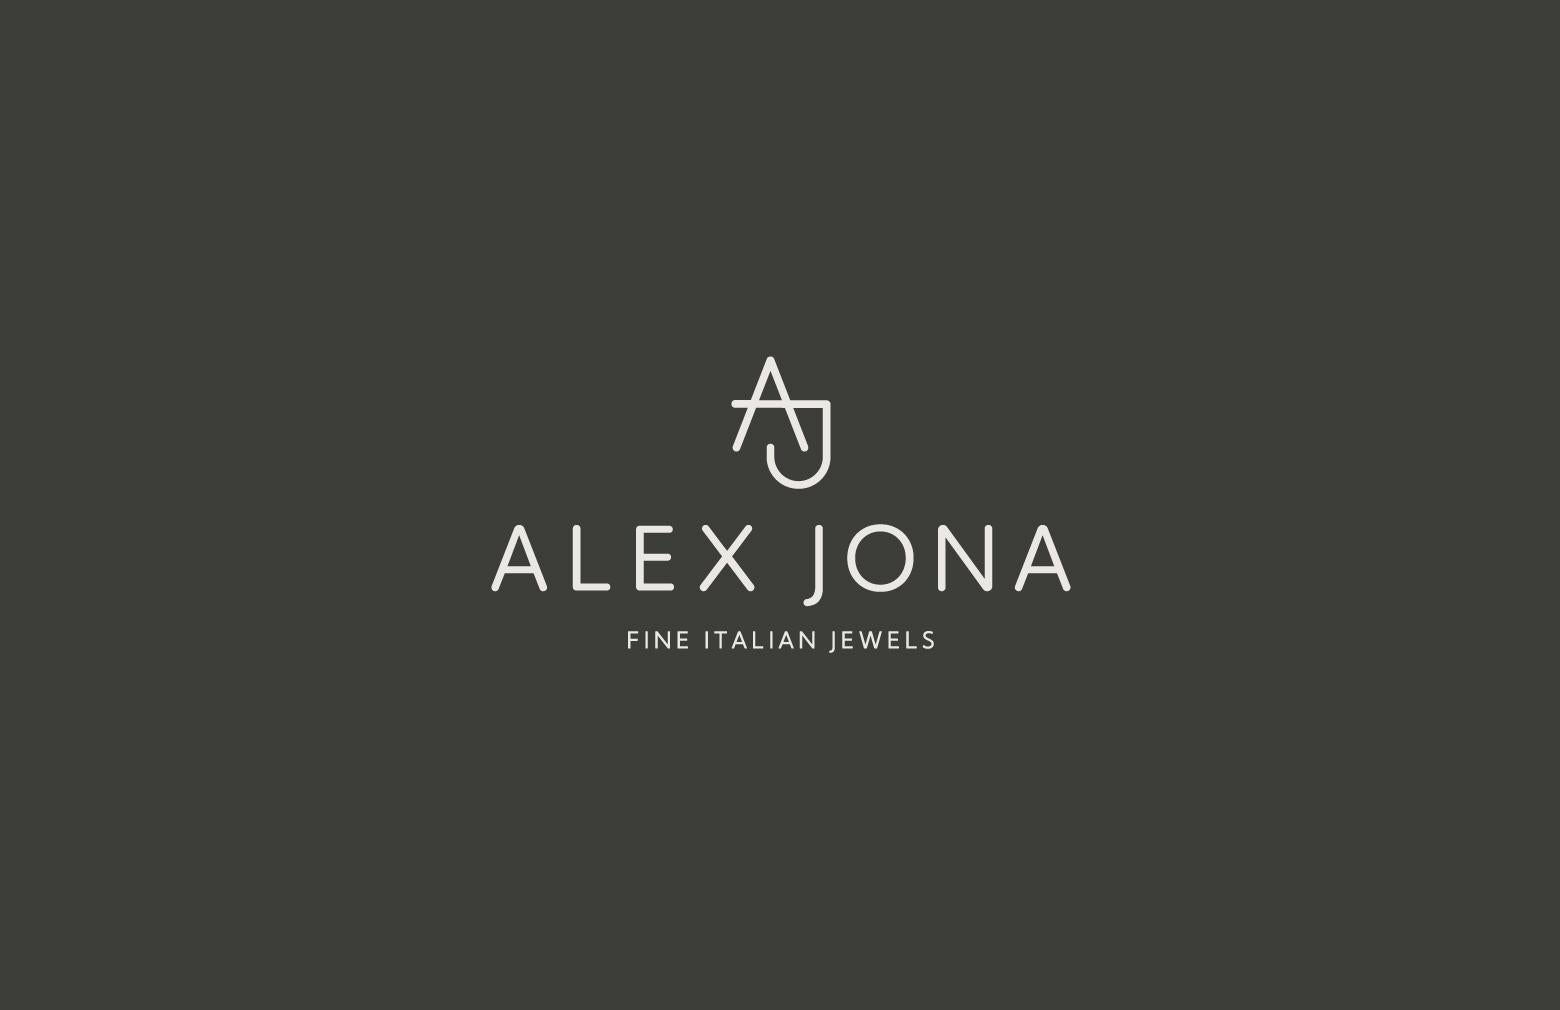 Alex Jona White Diamond 18 Karat White Gold Earrings For Sale 6